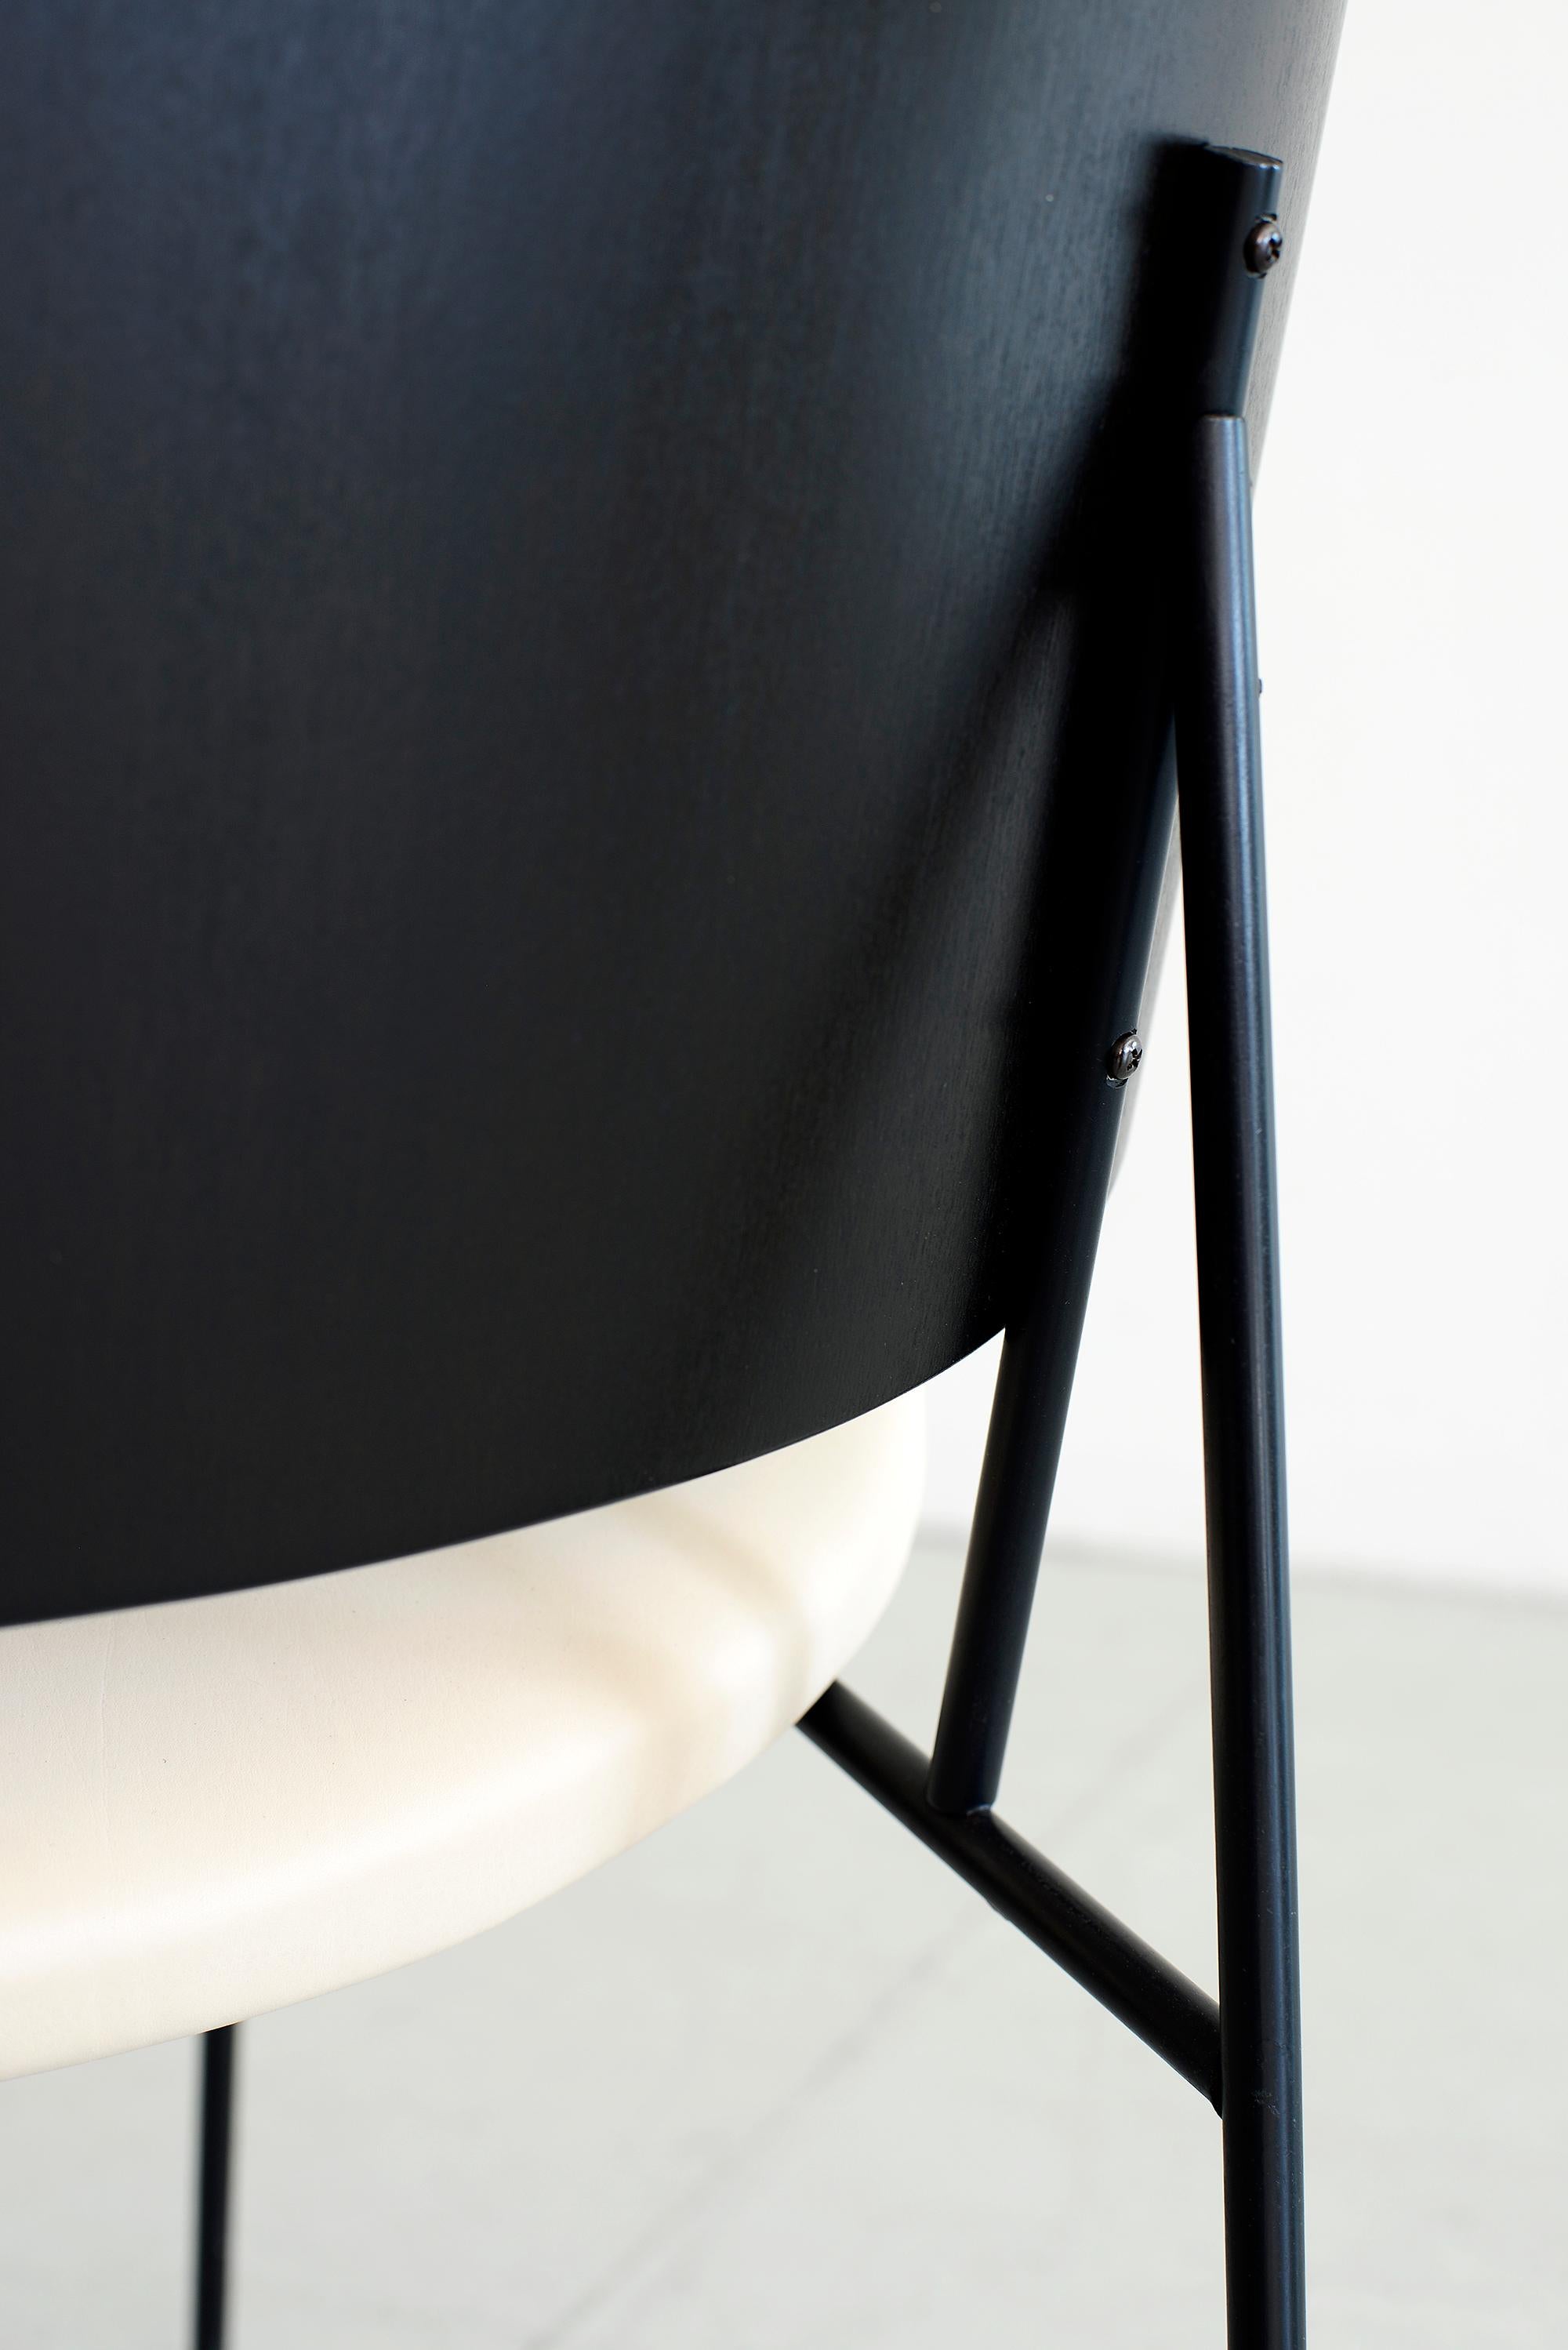 Leather Kofod Larsen Penguin Chairs